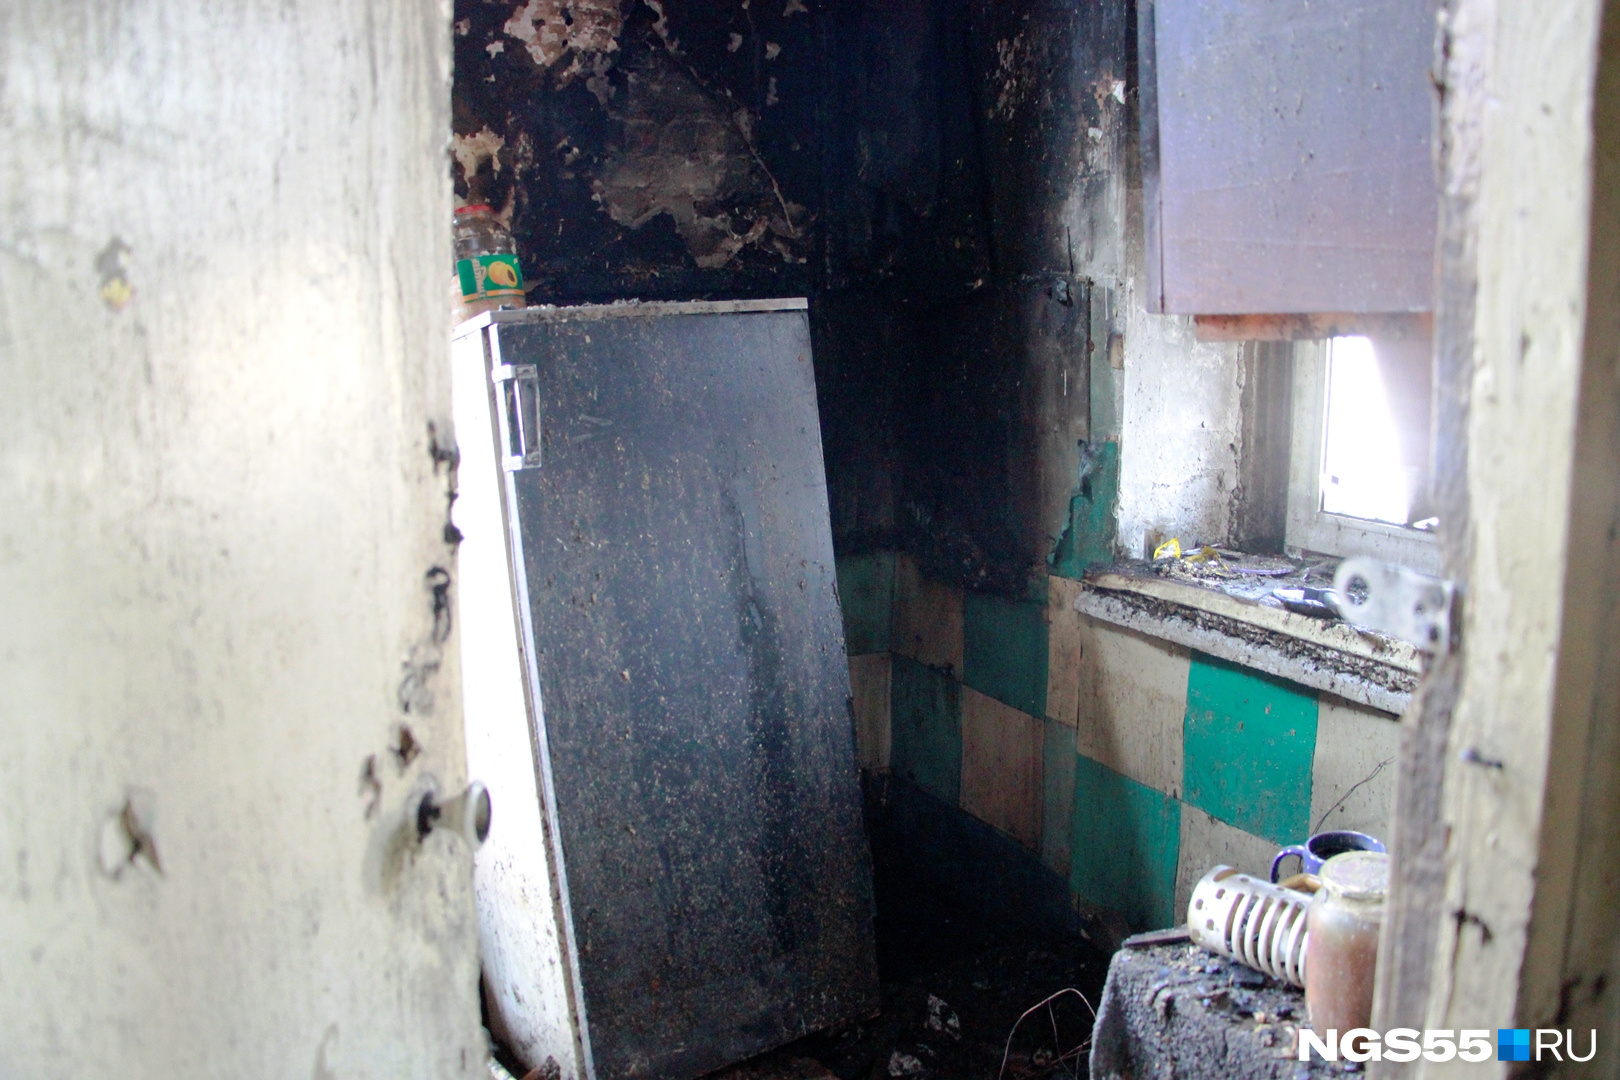 Газовая плита стояла возле холодильника — пока эксперты не выяснили, стала ли она причиной пожара